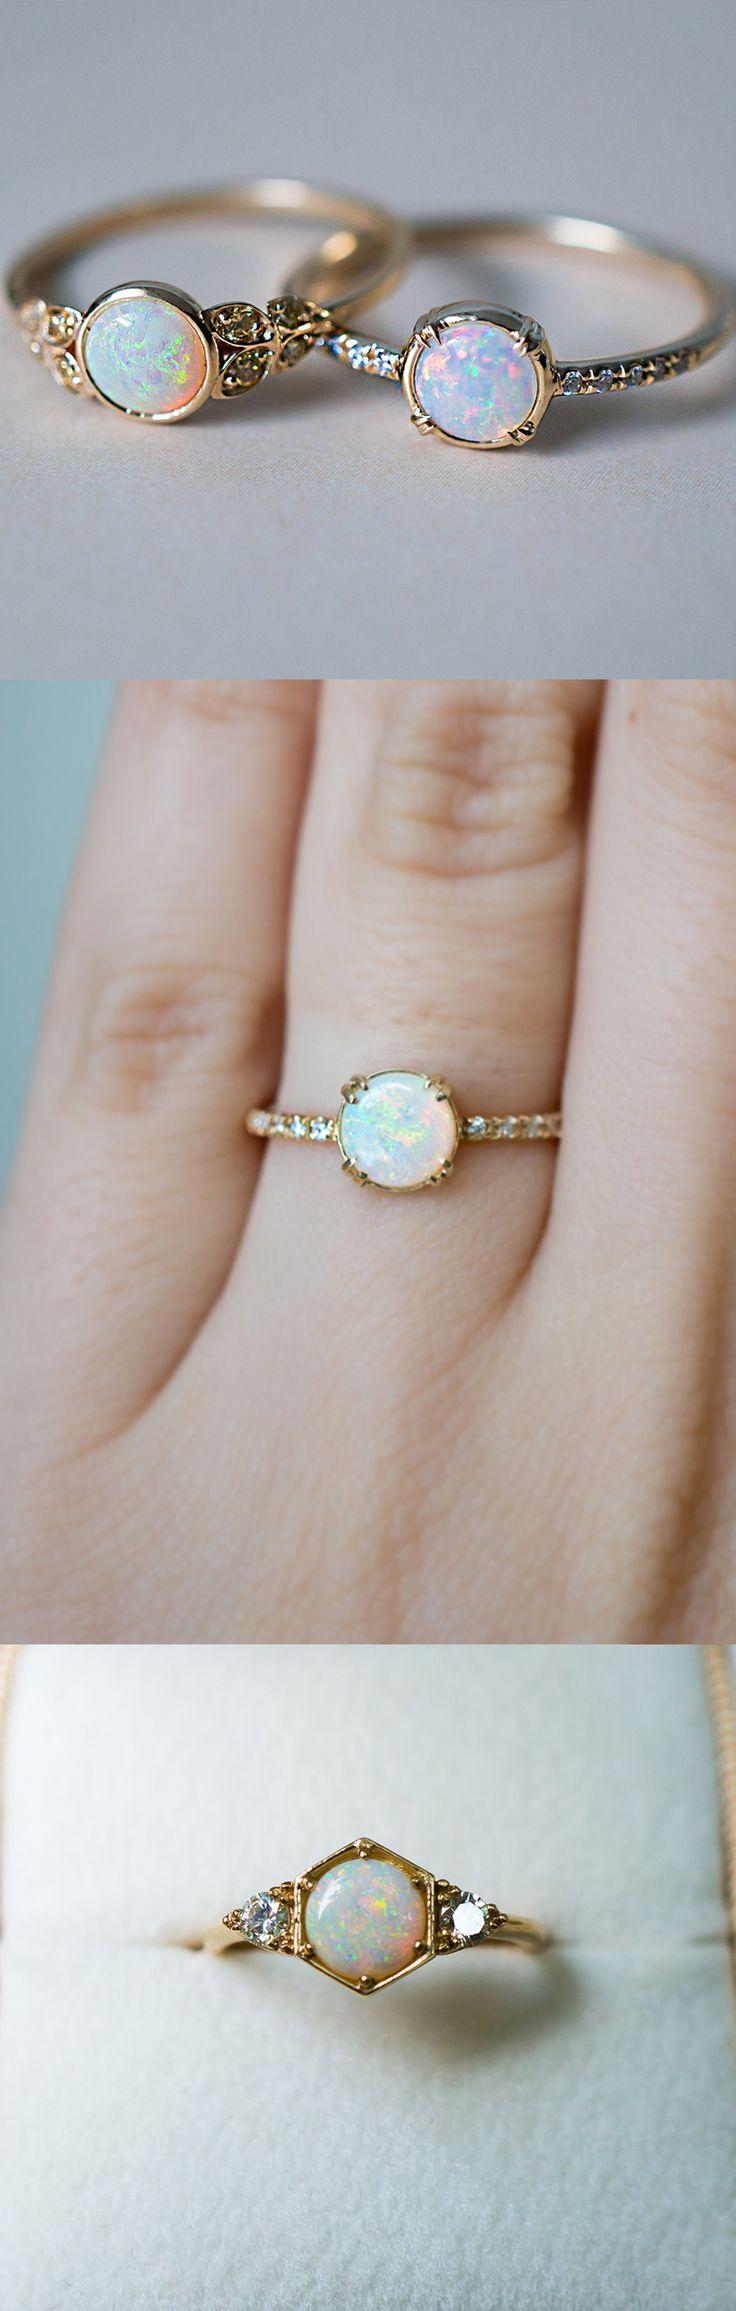 زفاف - Choosing An Engagement Ring